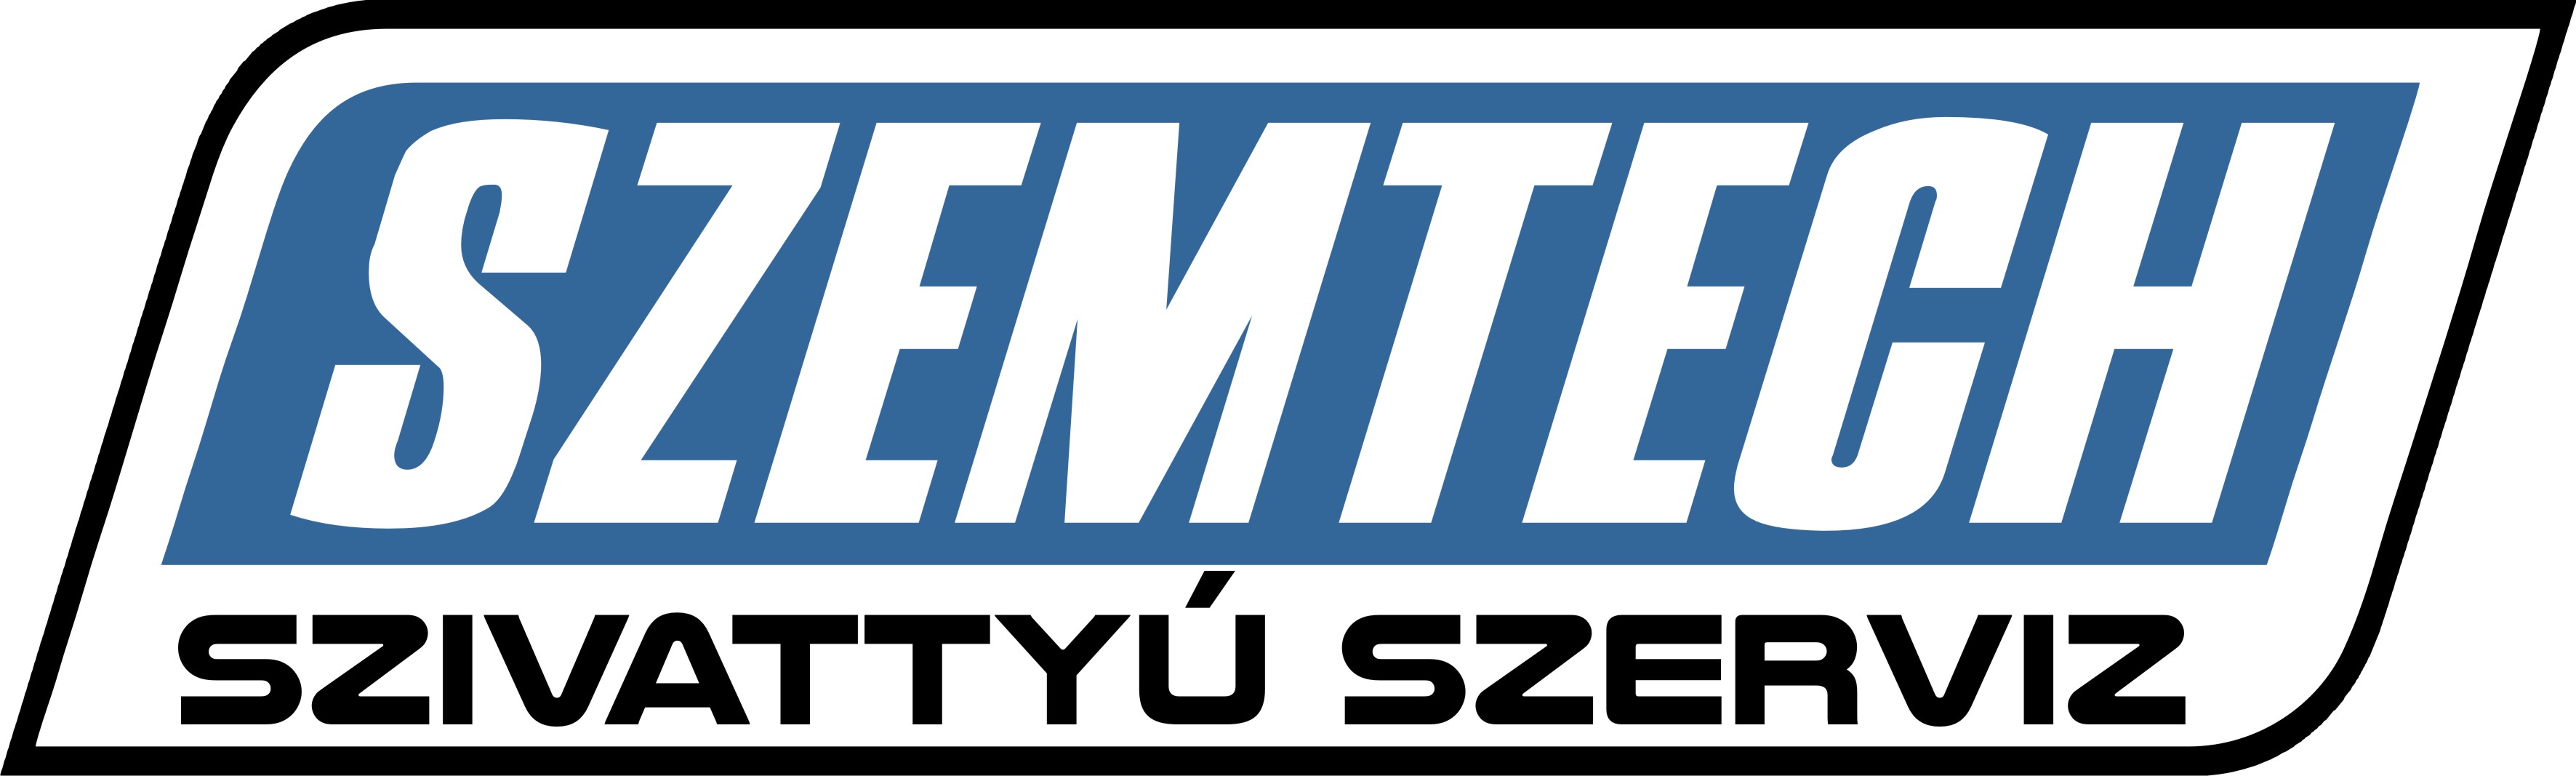 SZEMTECH logo